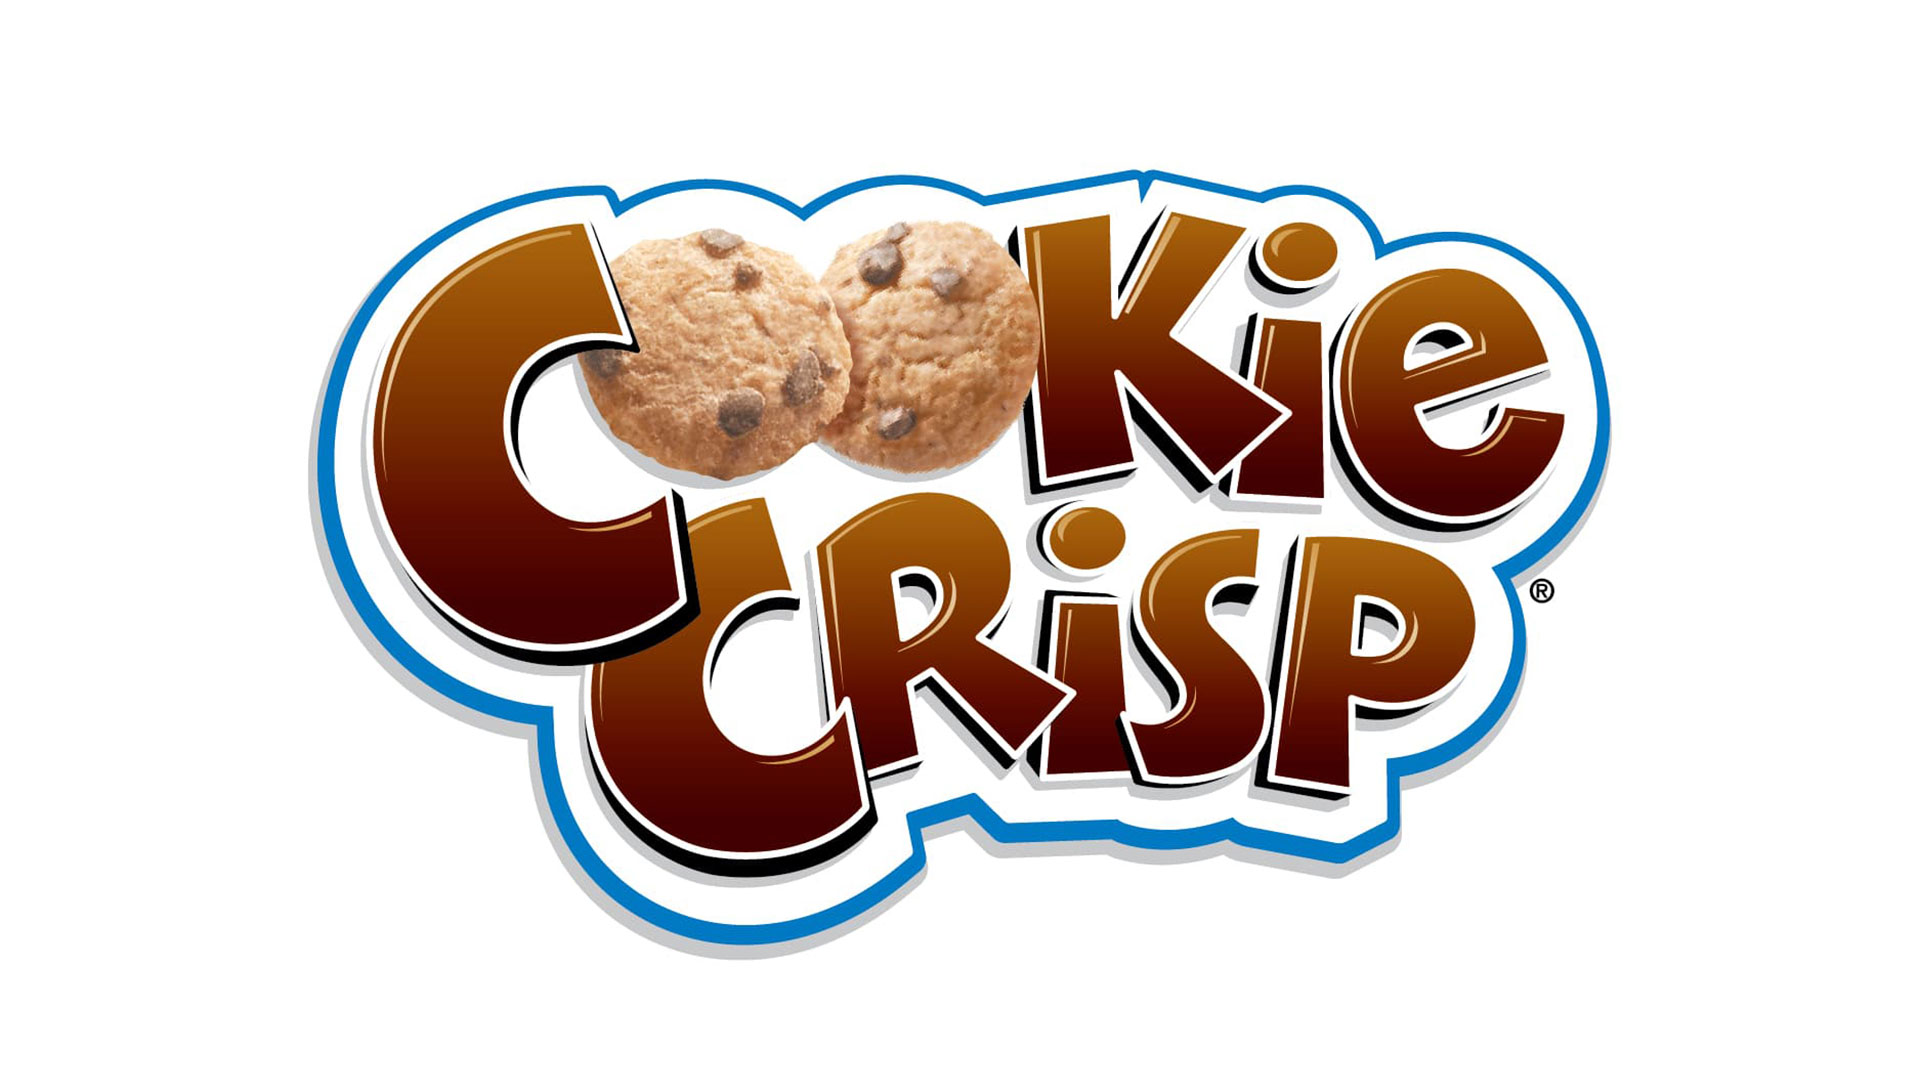 04-CookieCrisp.jpg